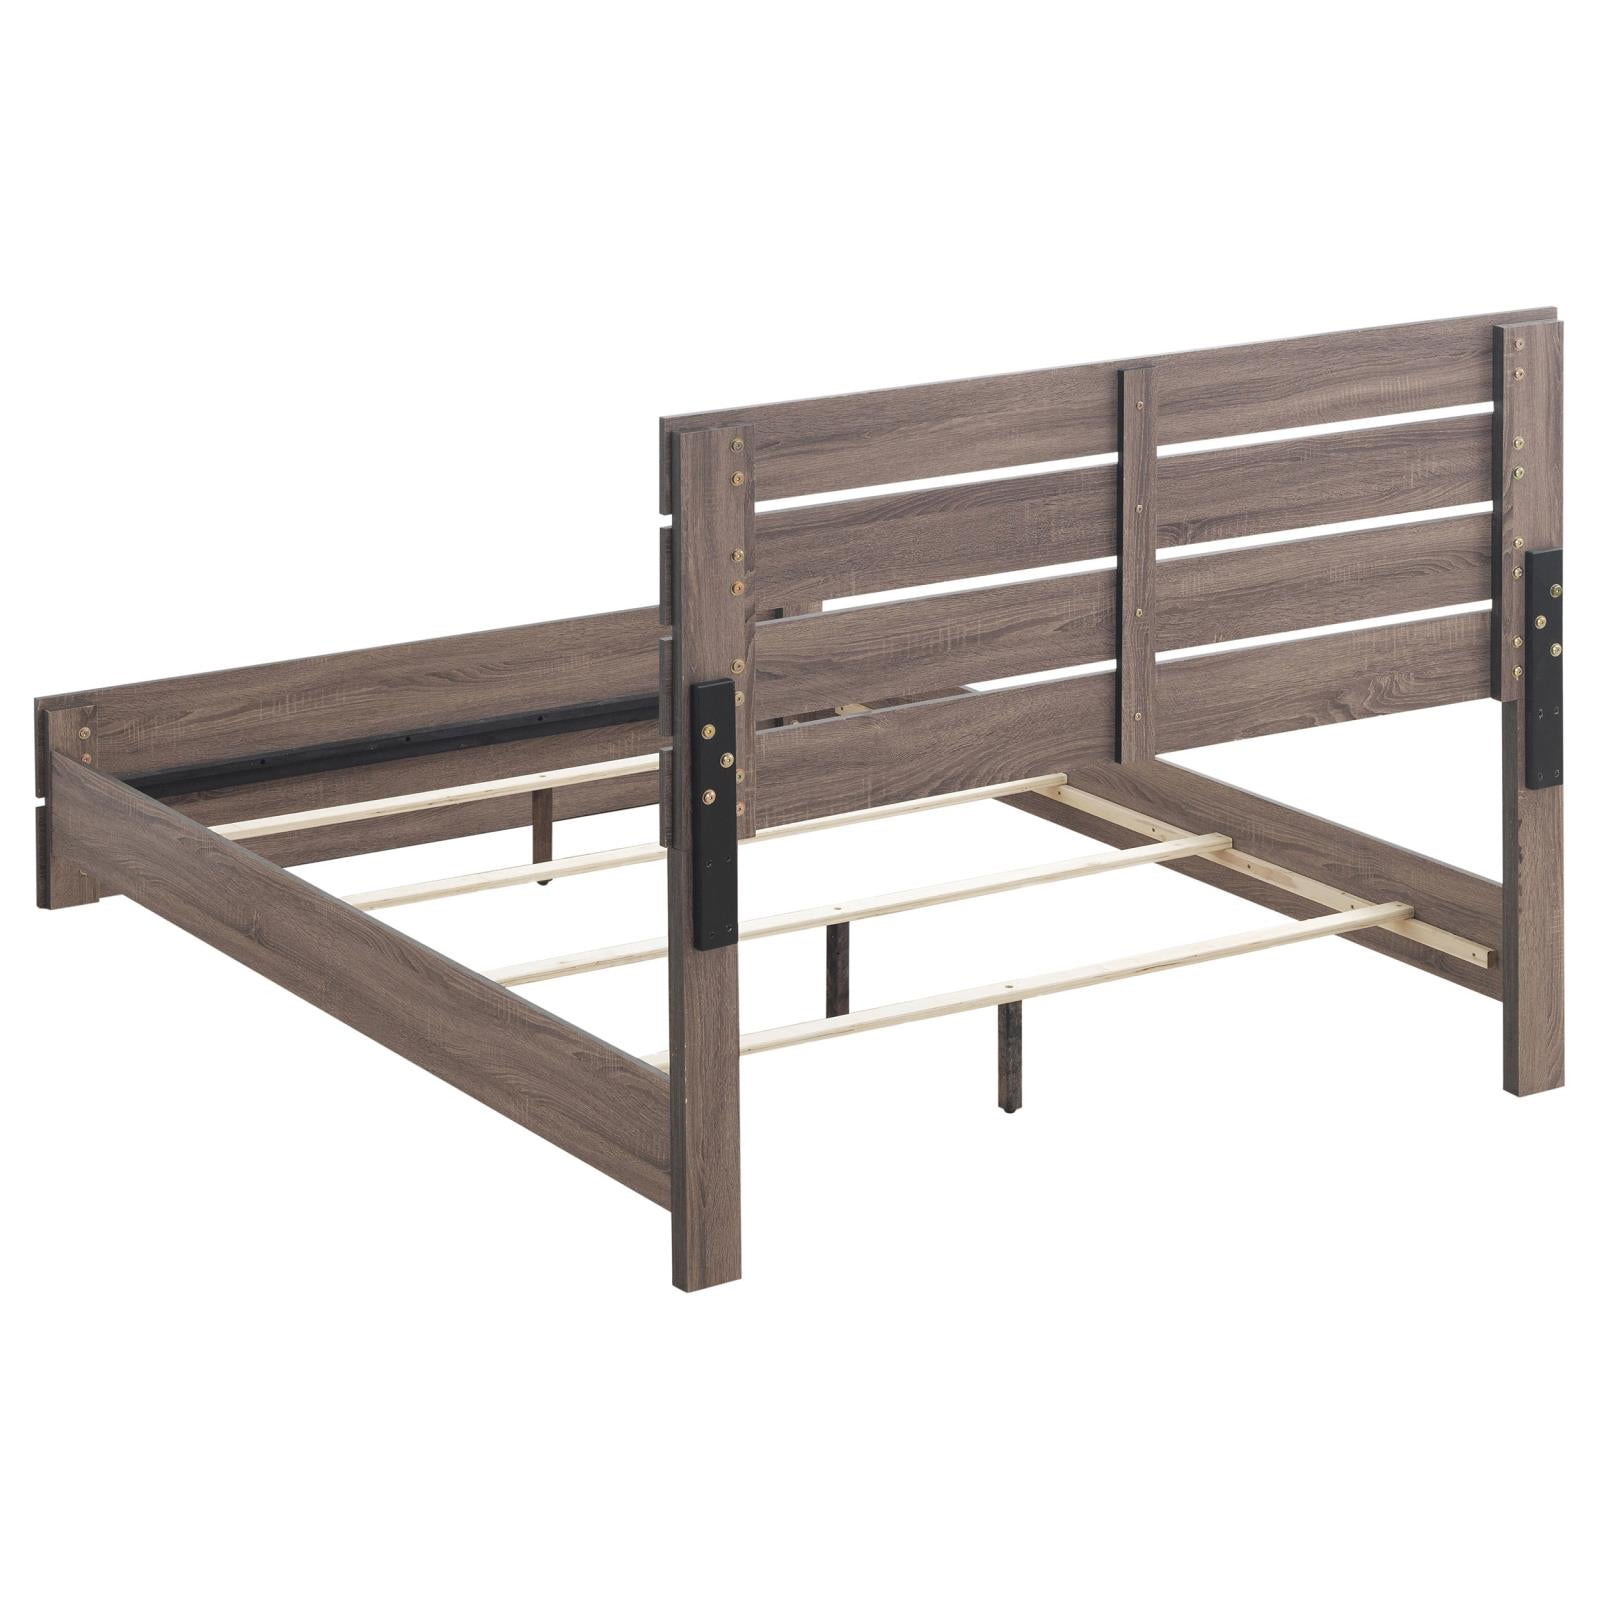 Brantford Barrel Oak Panel Bedroom Set - SET | 207041Q | 207042 | 207045 - Bien Home Furniture &amp; Electronics